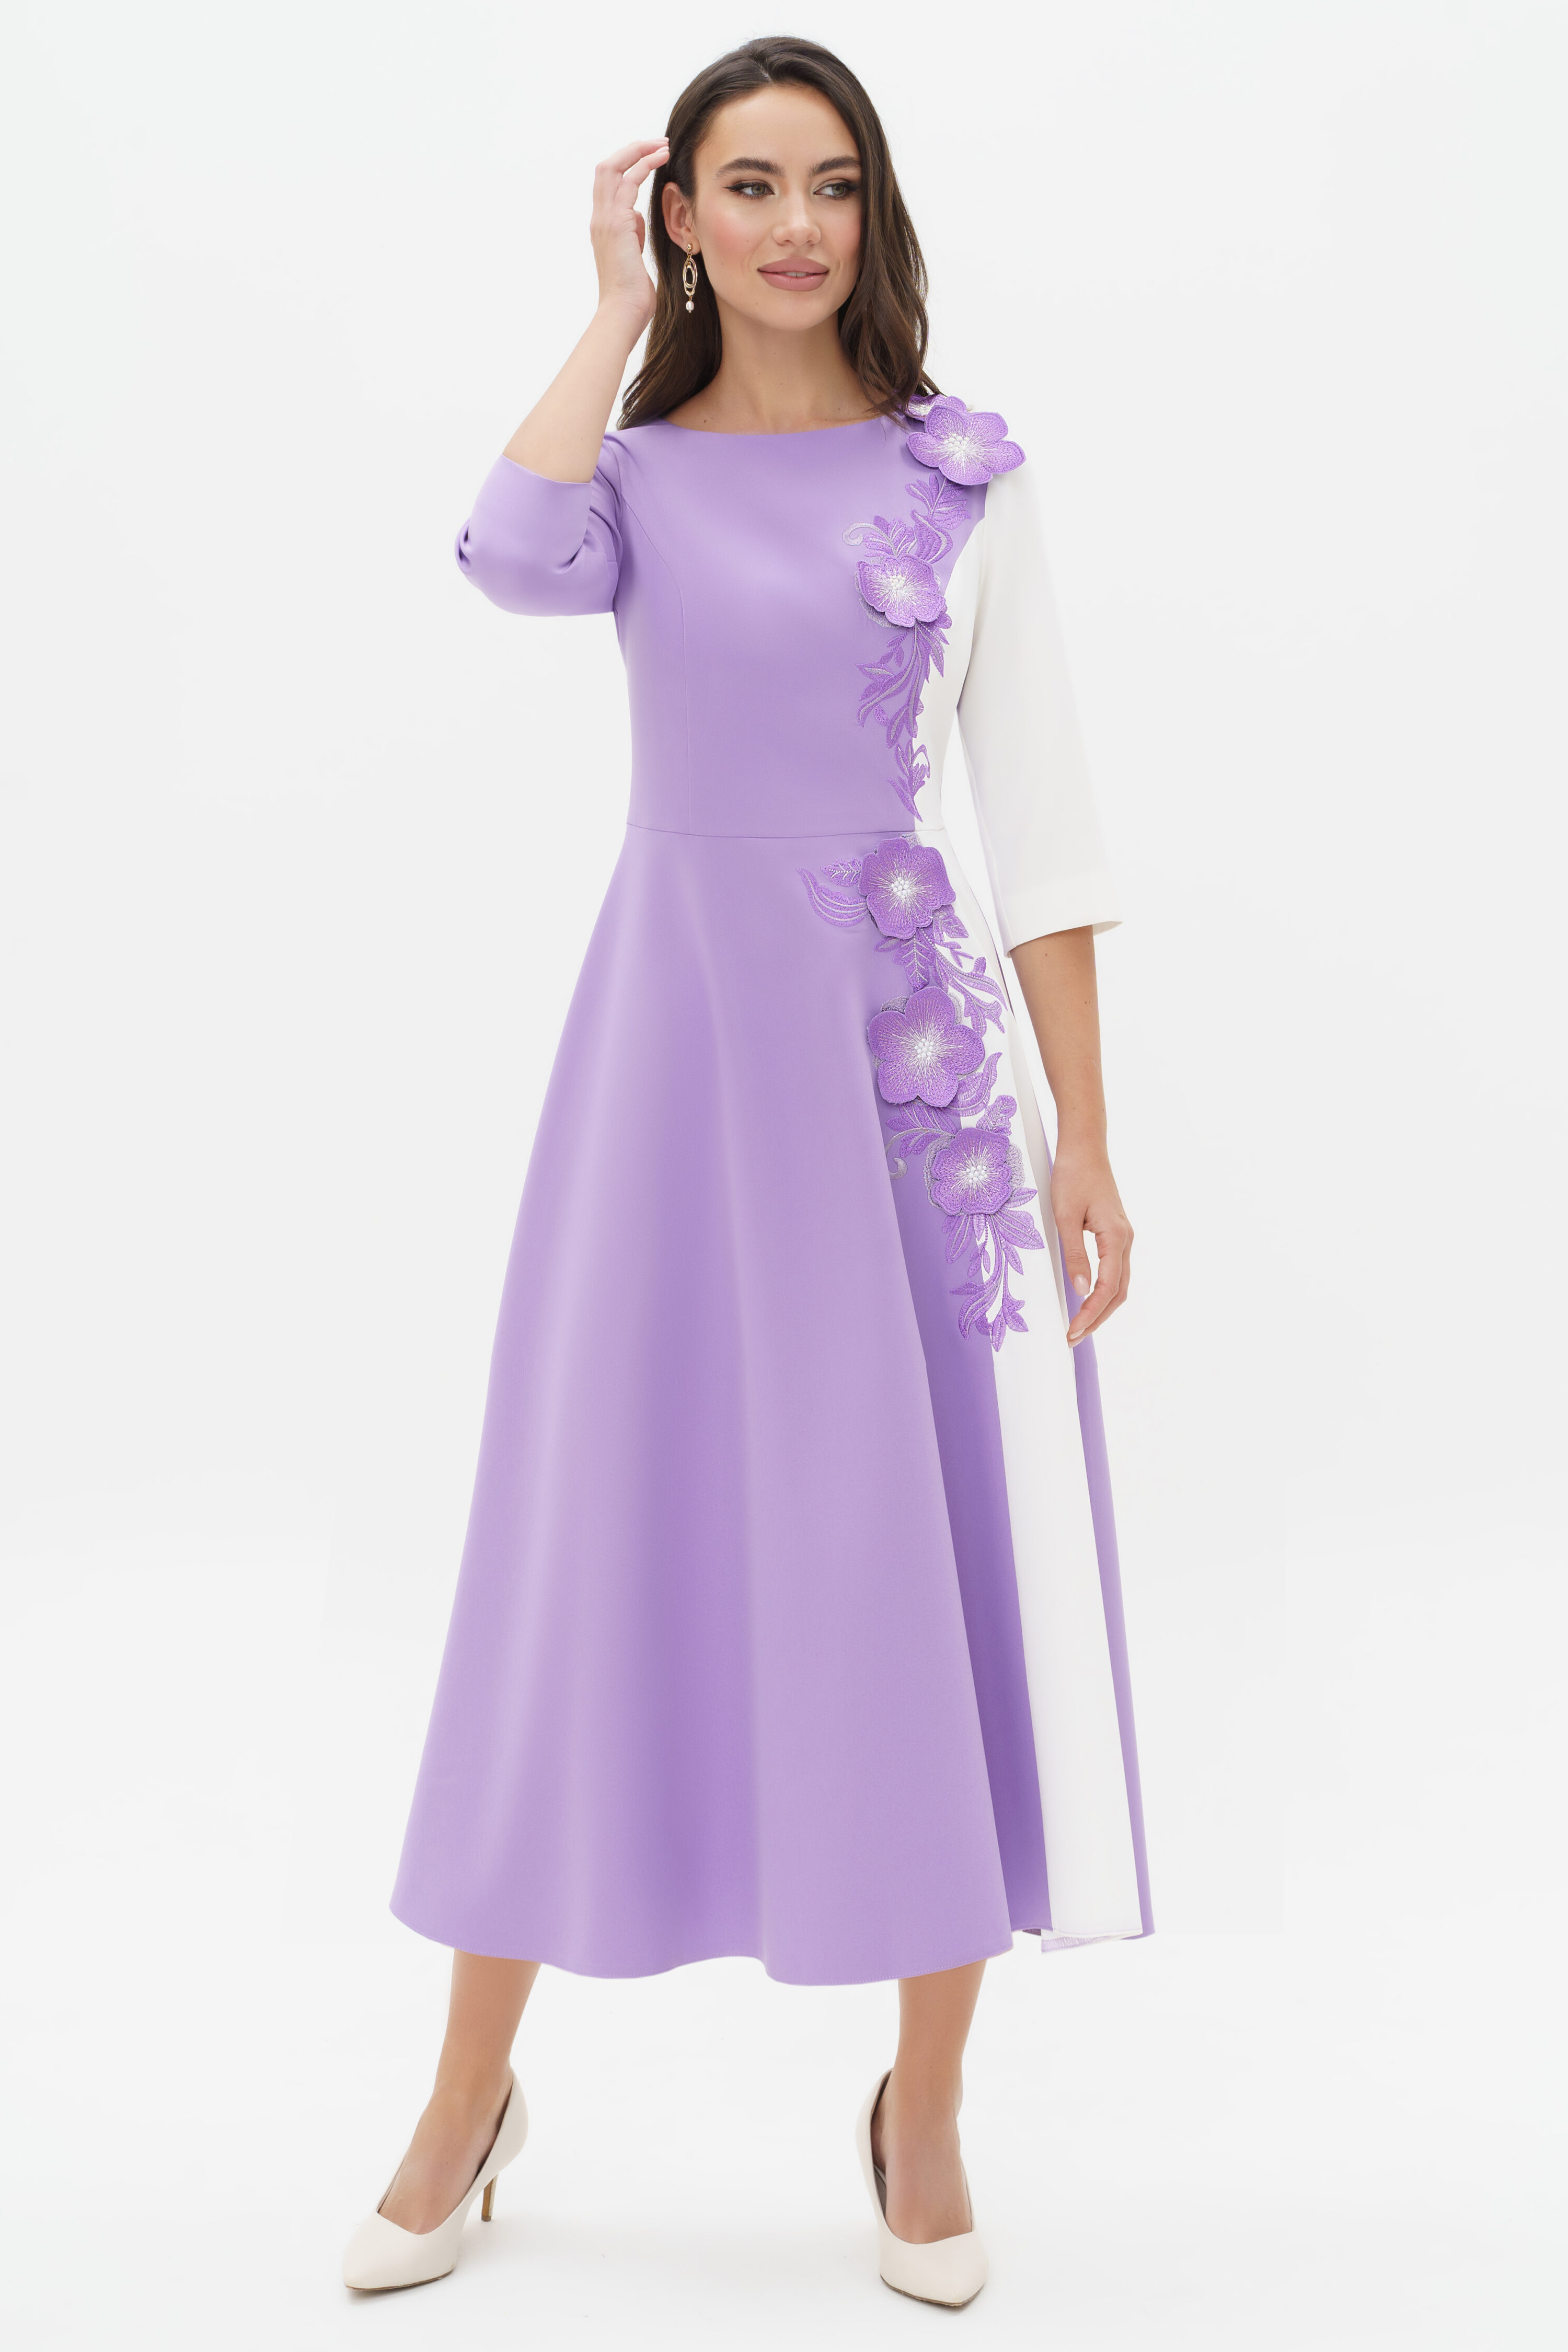 Купить платье URS 24-310-3 сиреневое женское с вышивкой